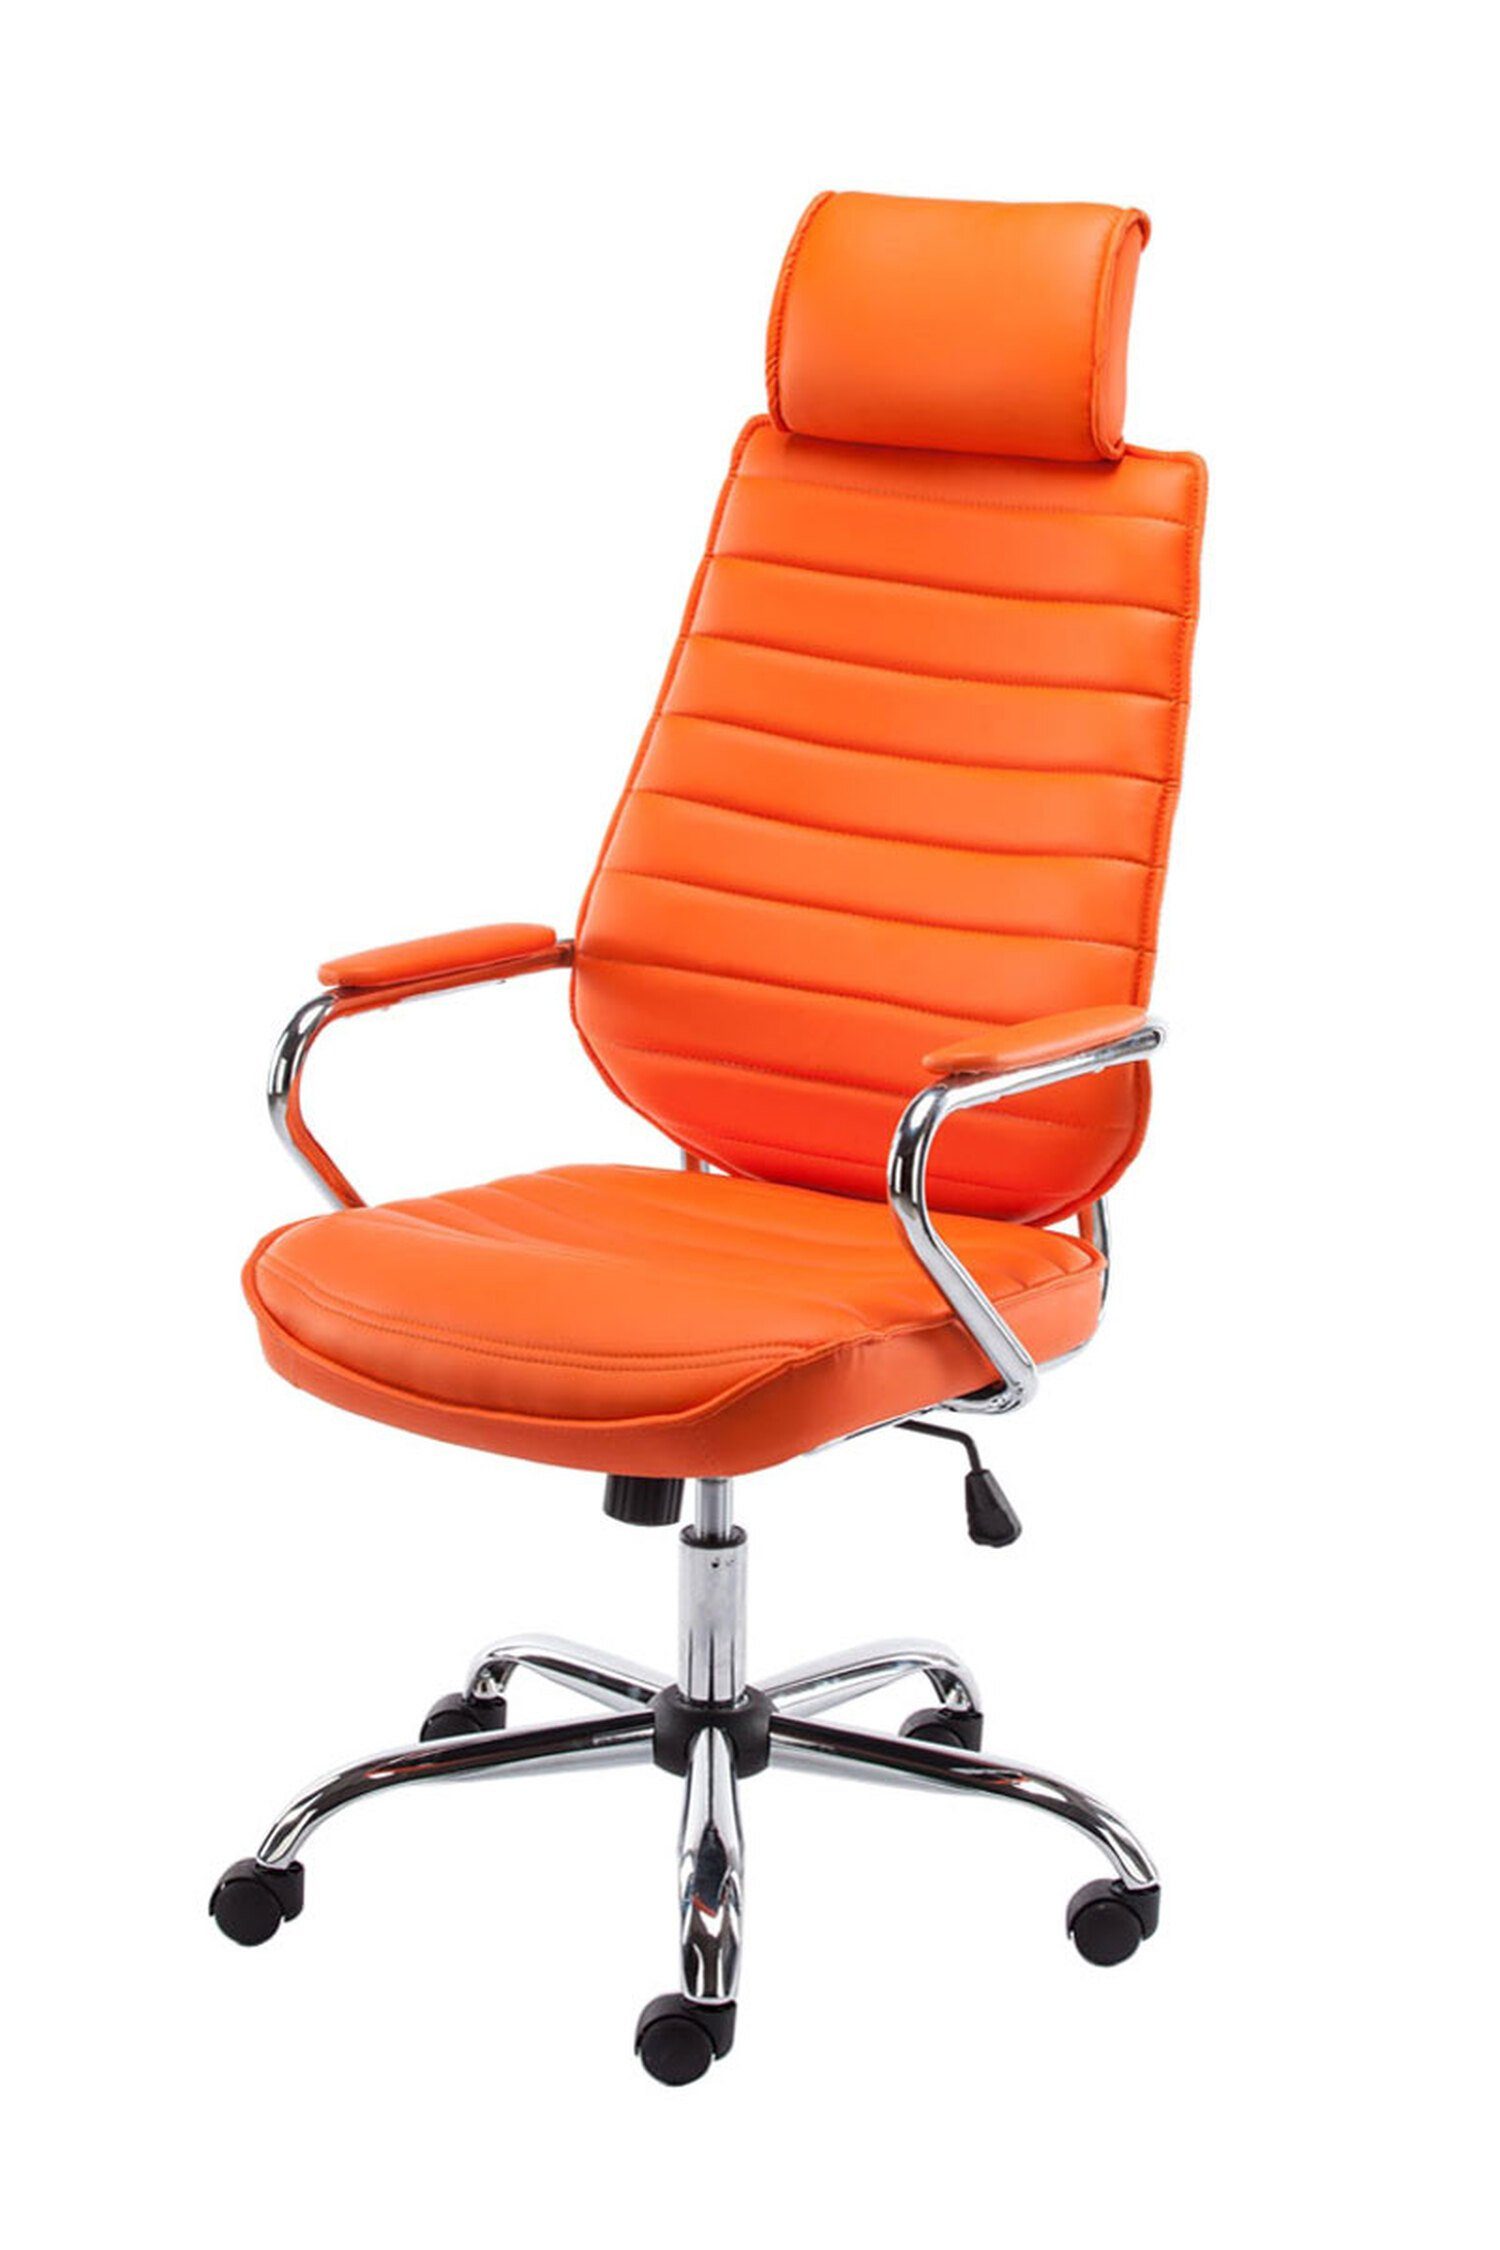 TPFLiving Bürostuhl Rocket V2 mit bequemer Rückenlehne - höhenverstellbar und 360° drehbar (Schreibtischstuhl, Drehstuhl, Chefsessel, Bürostuhl XXL), Gestell: Metall chrom - Sitz: Kunstleder orange